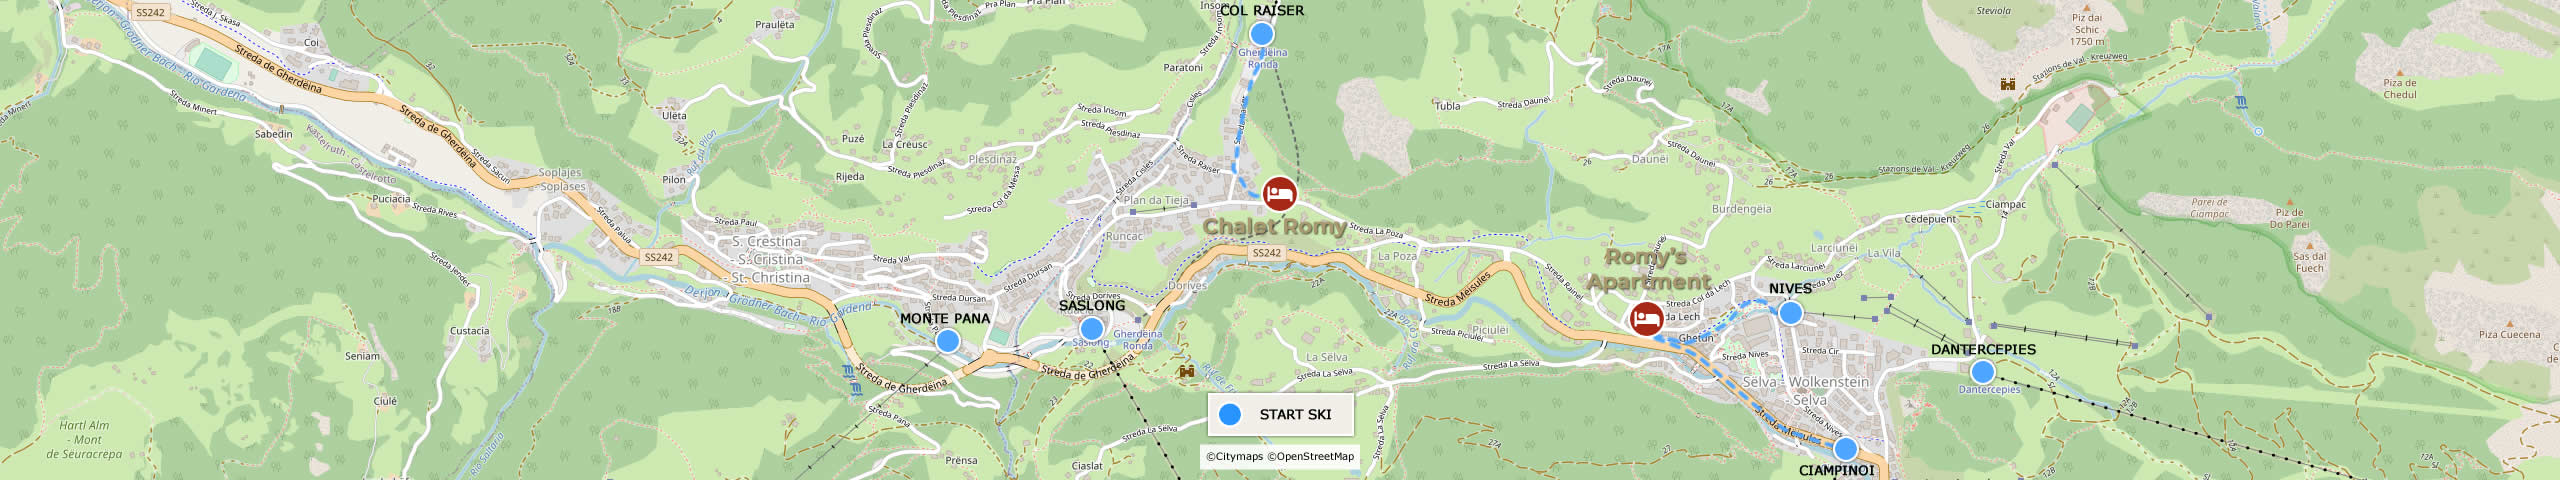 Google Maps Chalet Romy